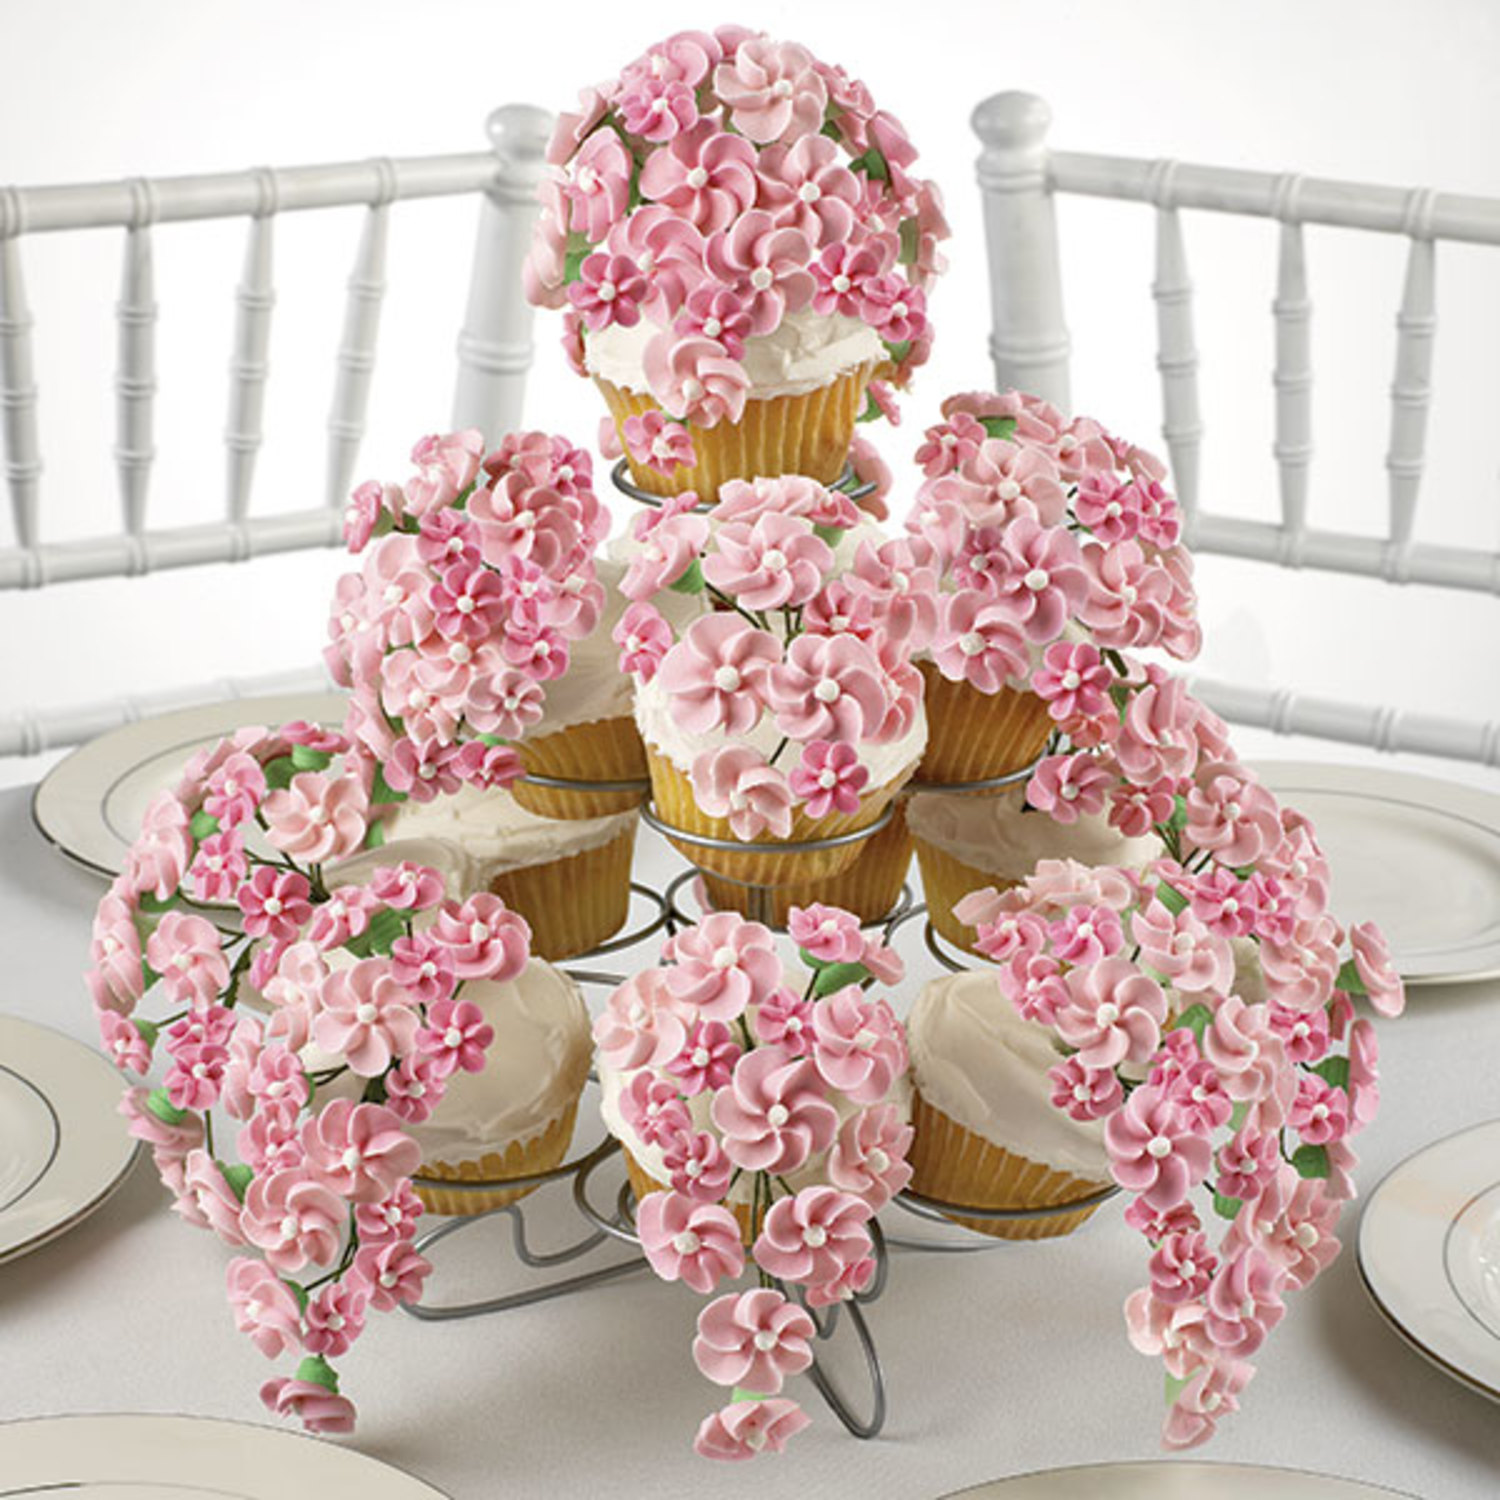 Festive Florals Cupcakes